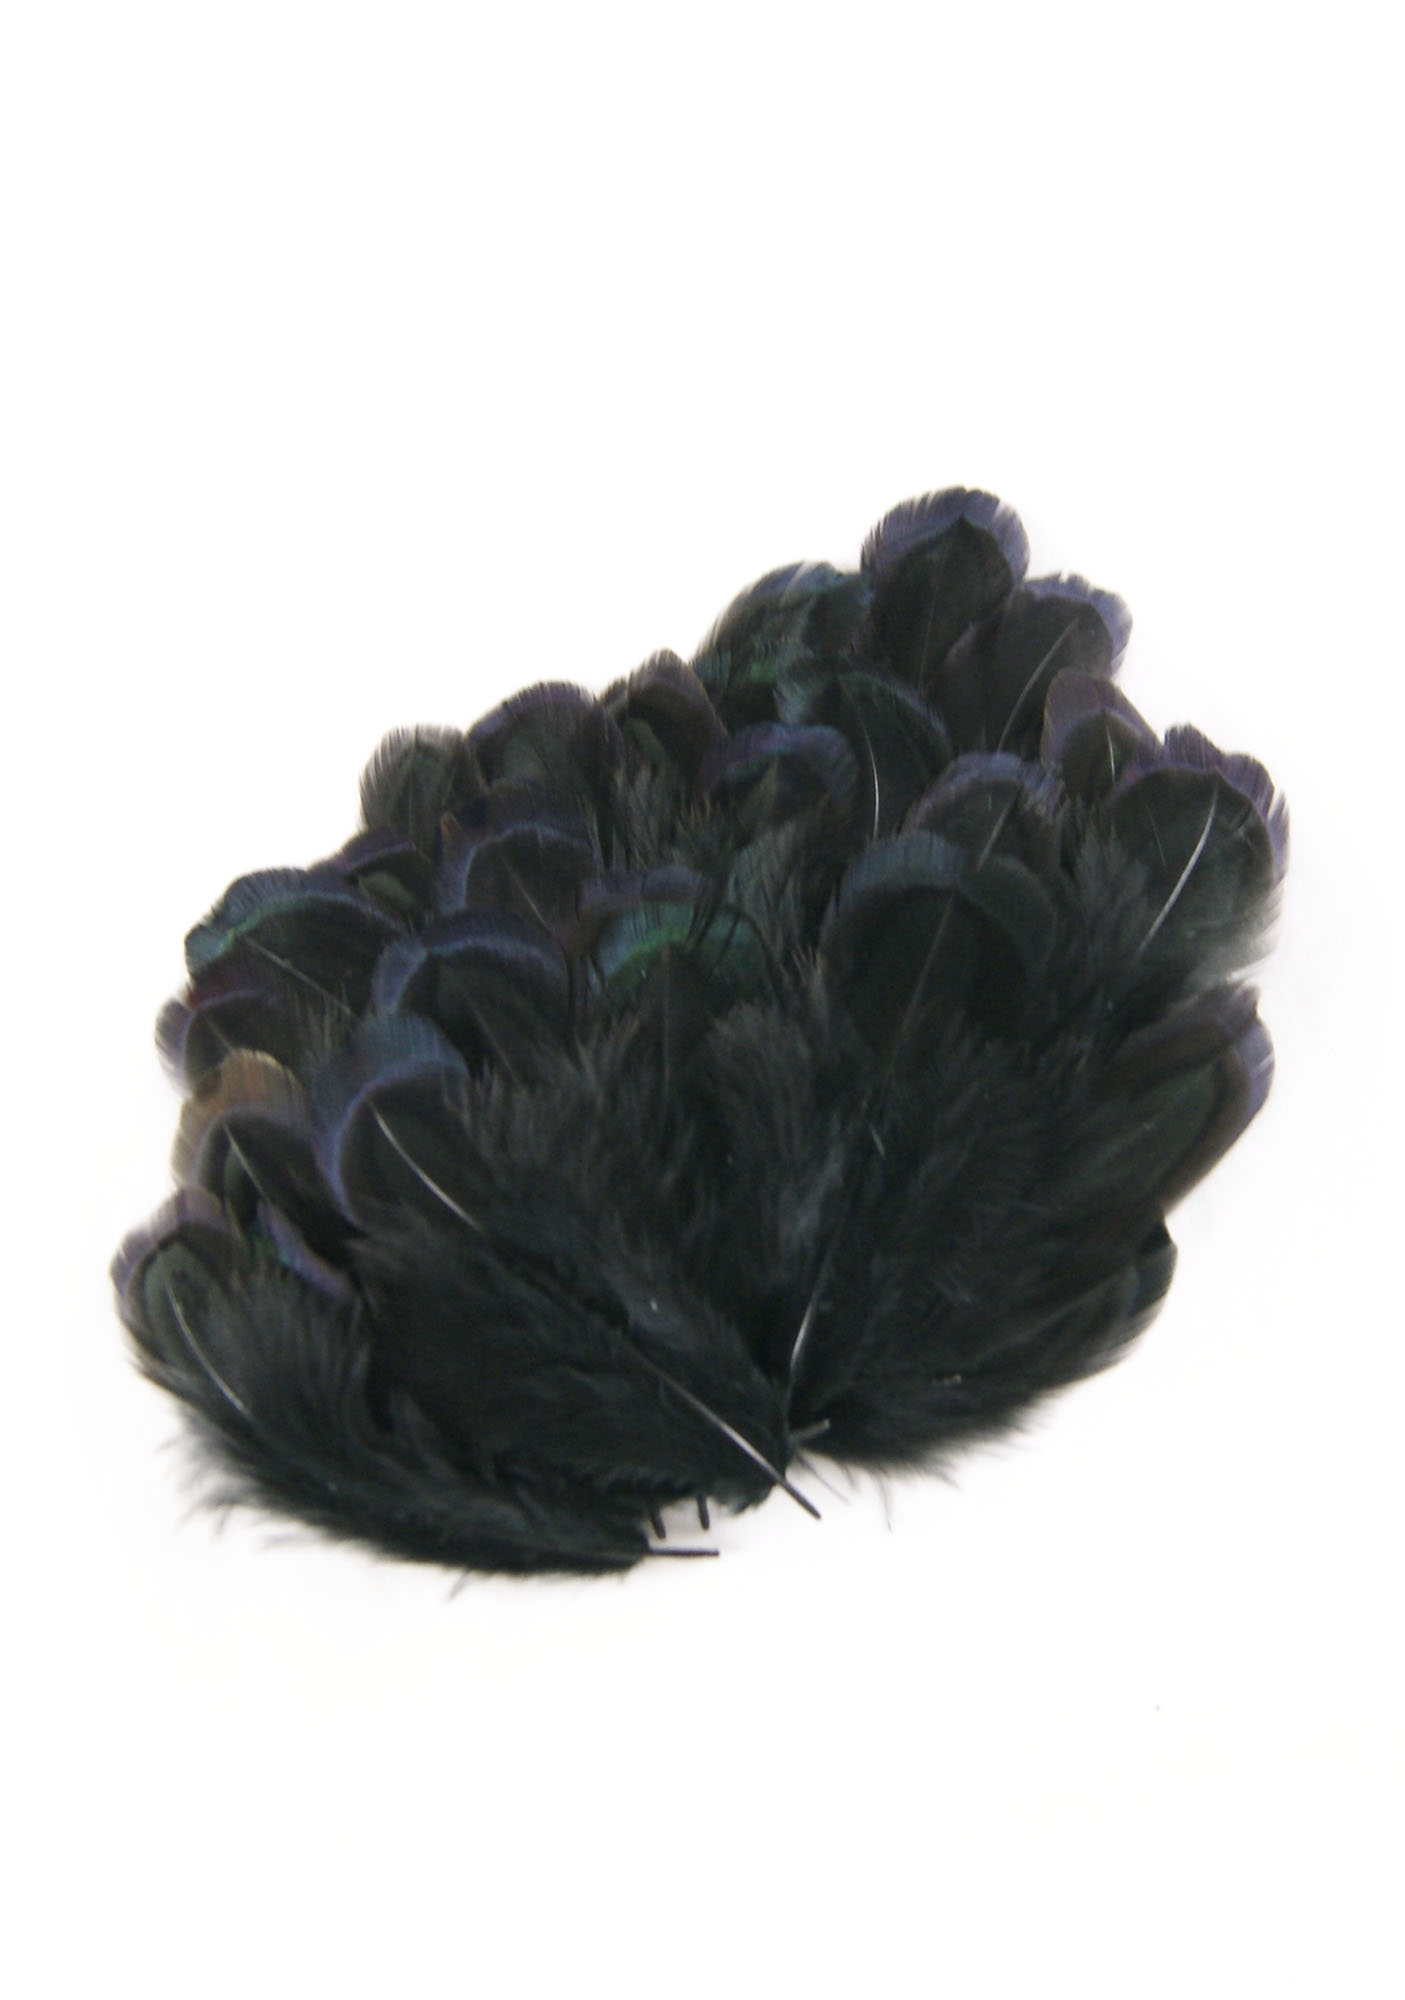 plume amande de faisan commun - 5 grs - teintes noir, gris